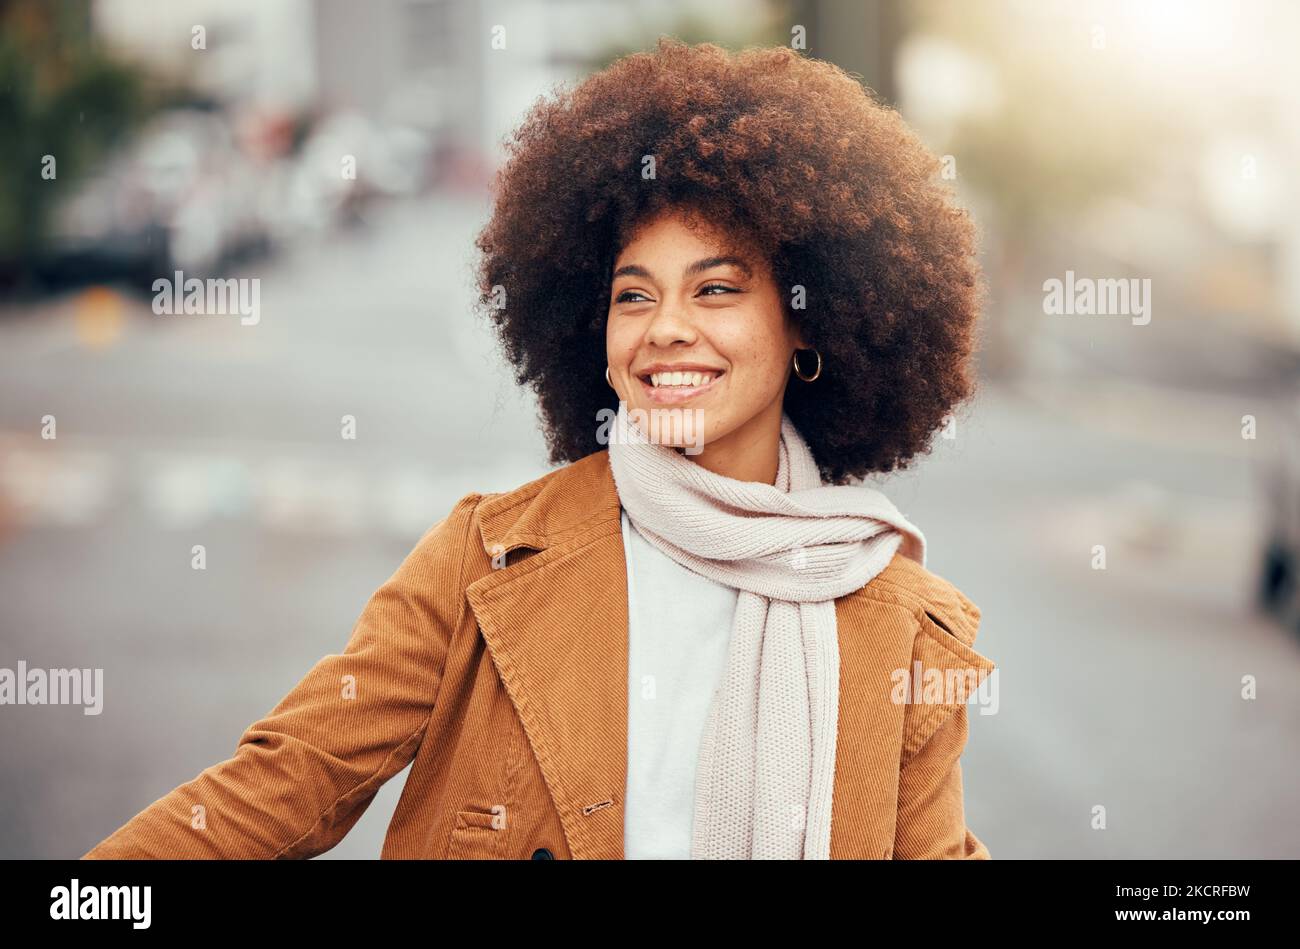 Winter, Mode und schwarze Frau auf der Straße der Stadt für Urlaub, Reisen und Glück in Portugal. Lächeln, denken und junge afrikanische Mädchen glücklich auf einem Stockfoto